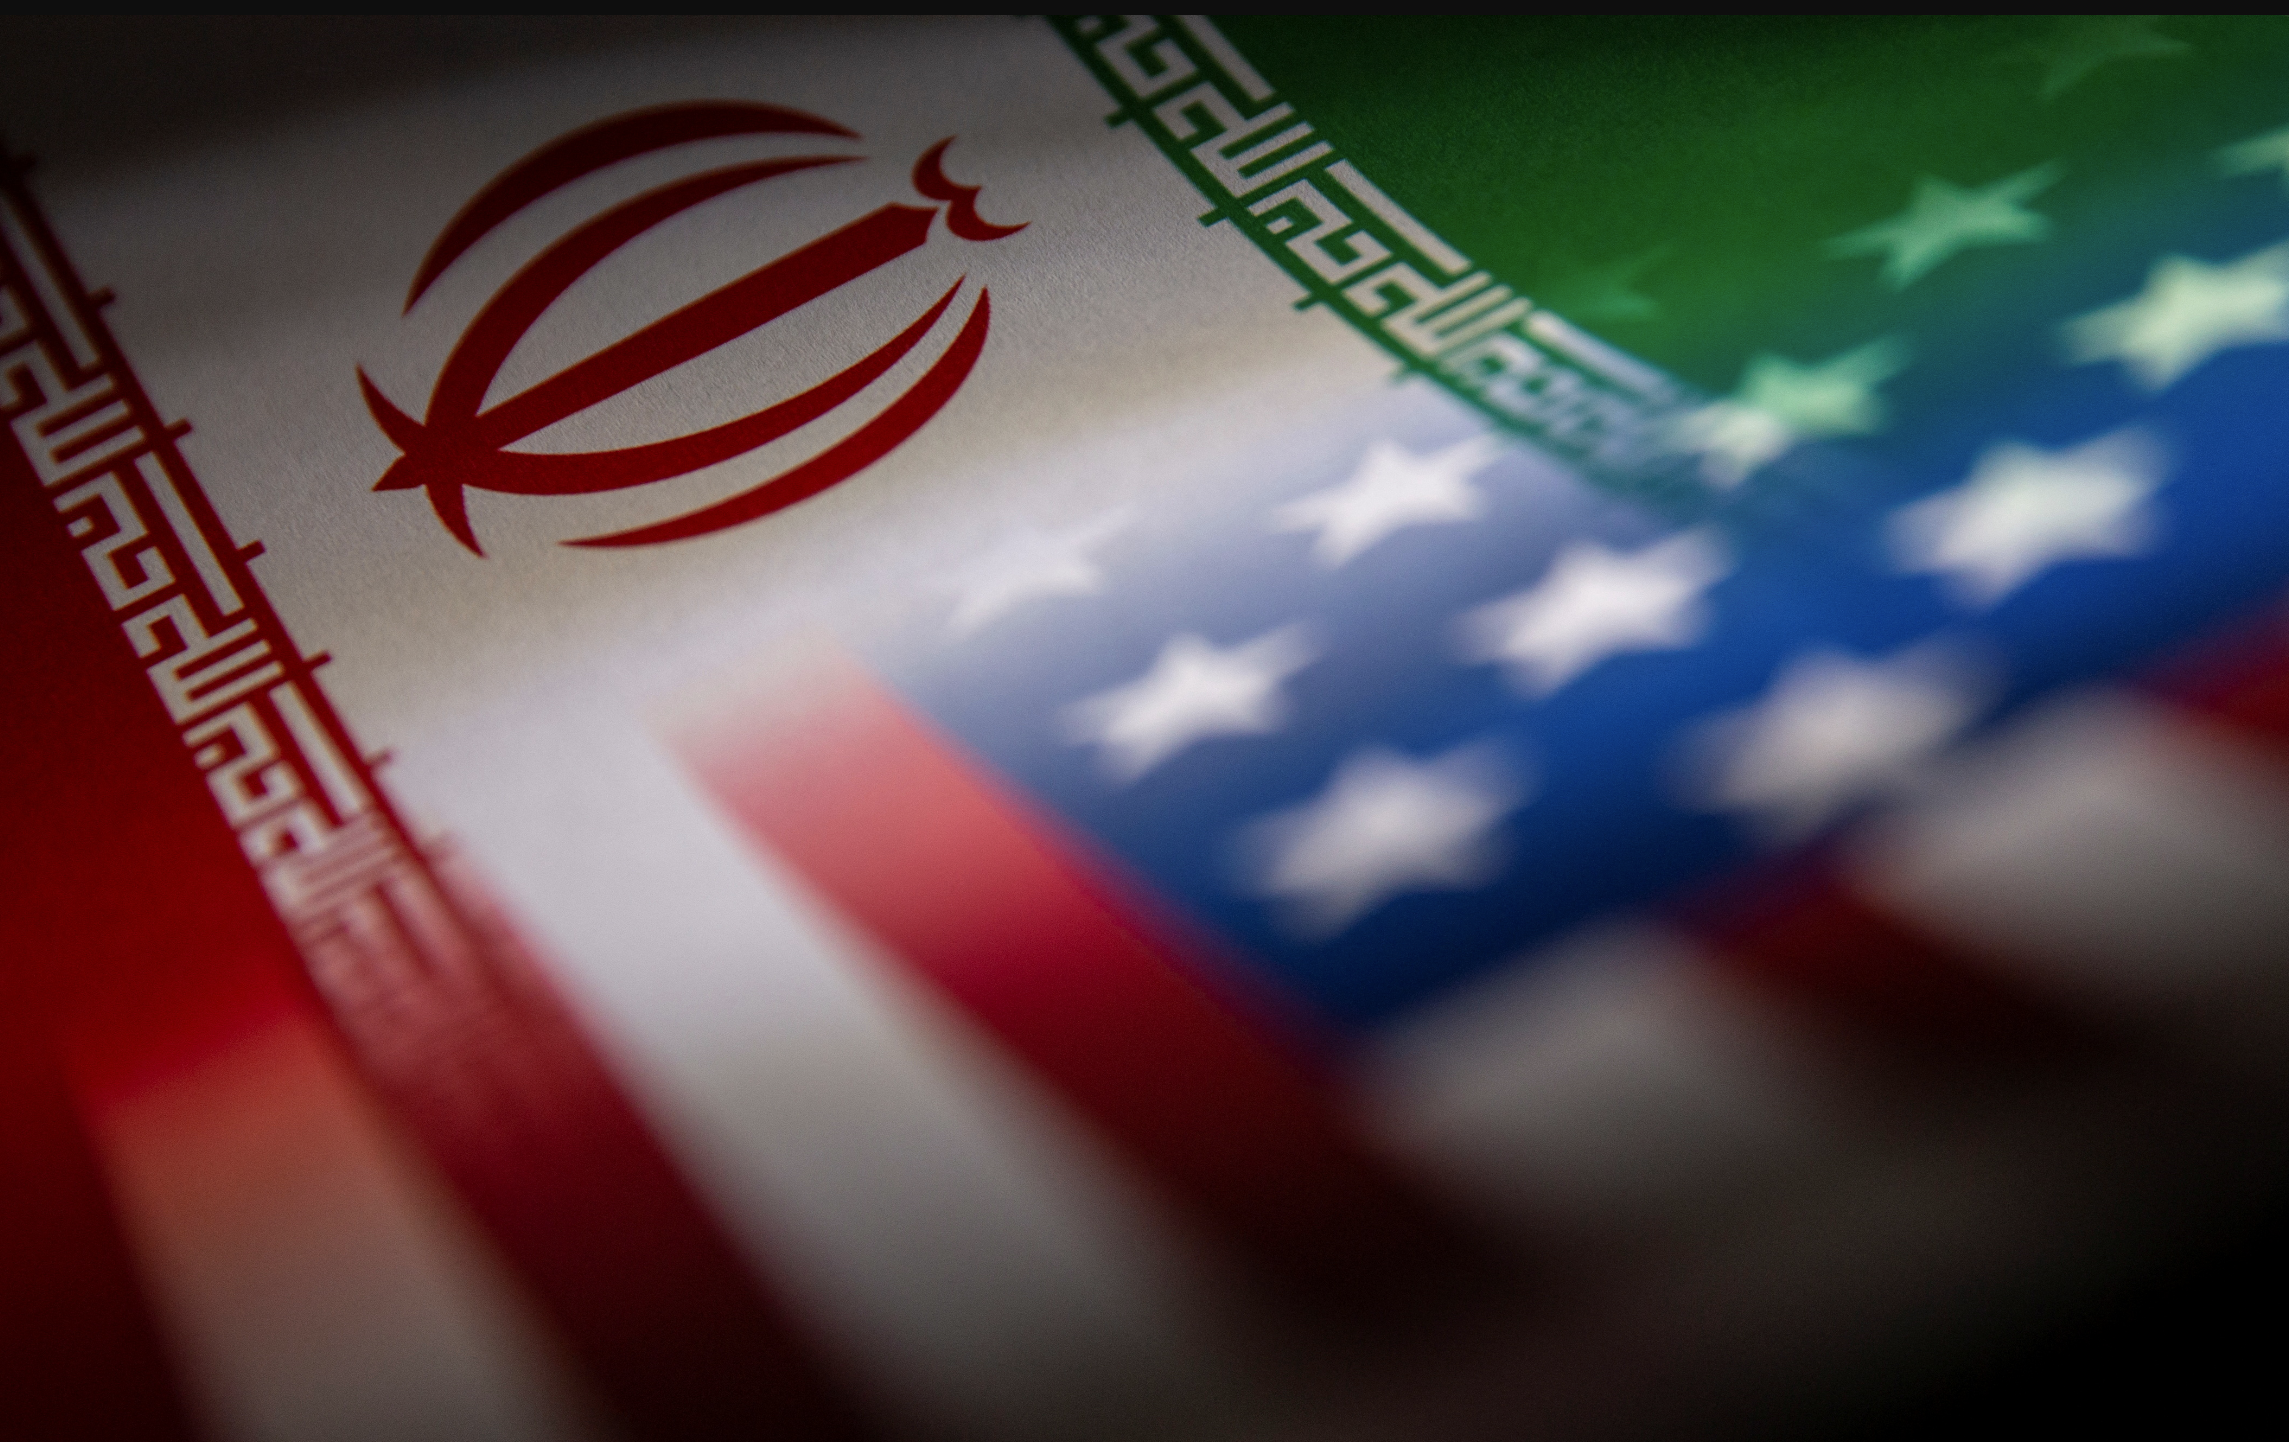 قطر میزبان مذاکرات غیرمستقیم ایران و آمریکا برای احیای توافق هسته ای 2015 خواهد بود